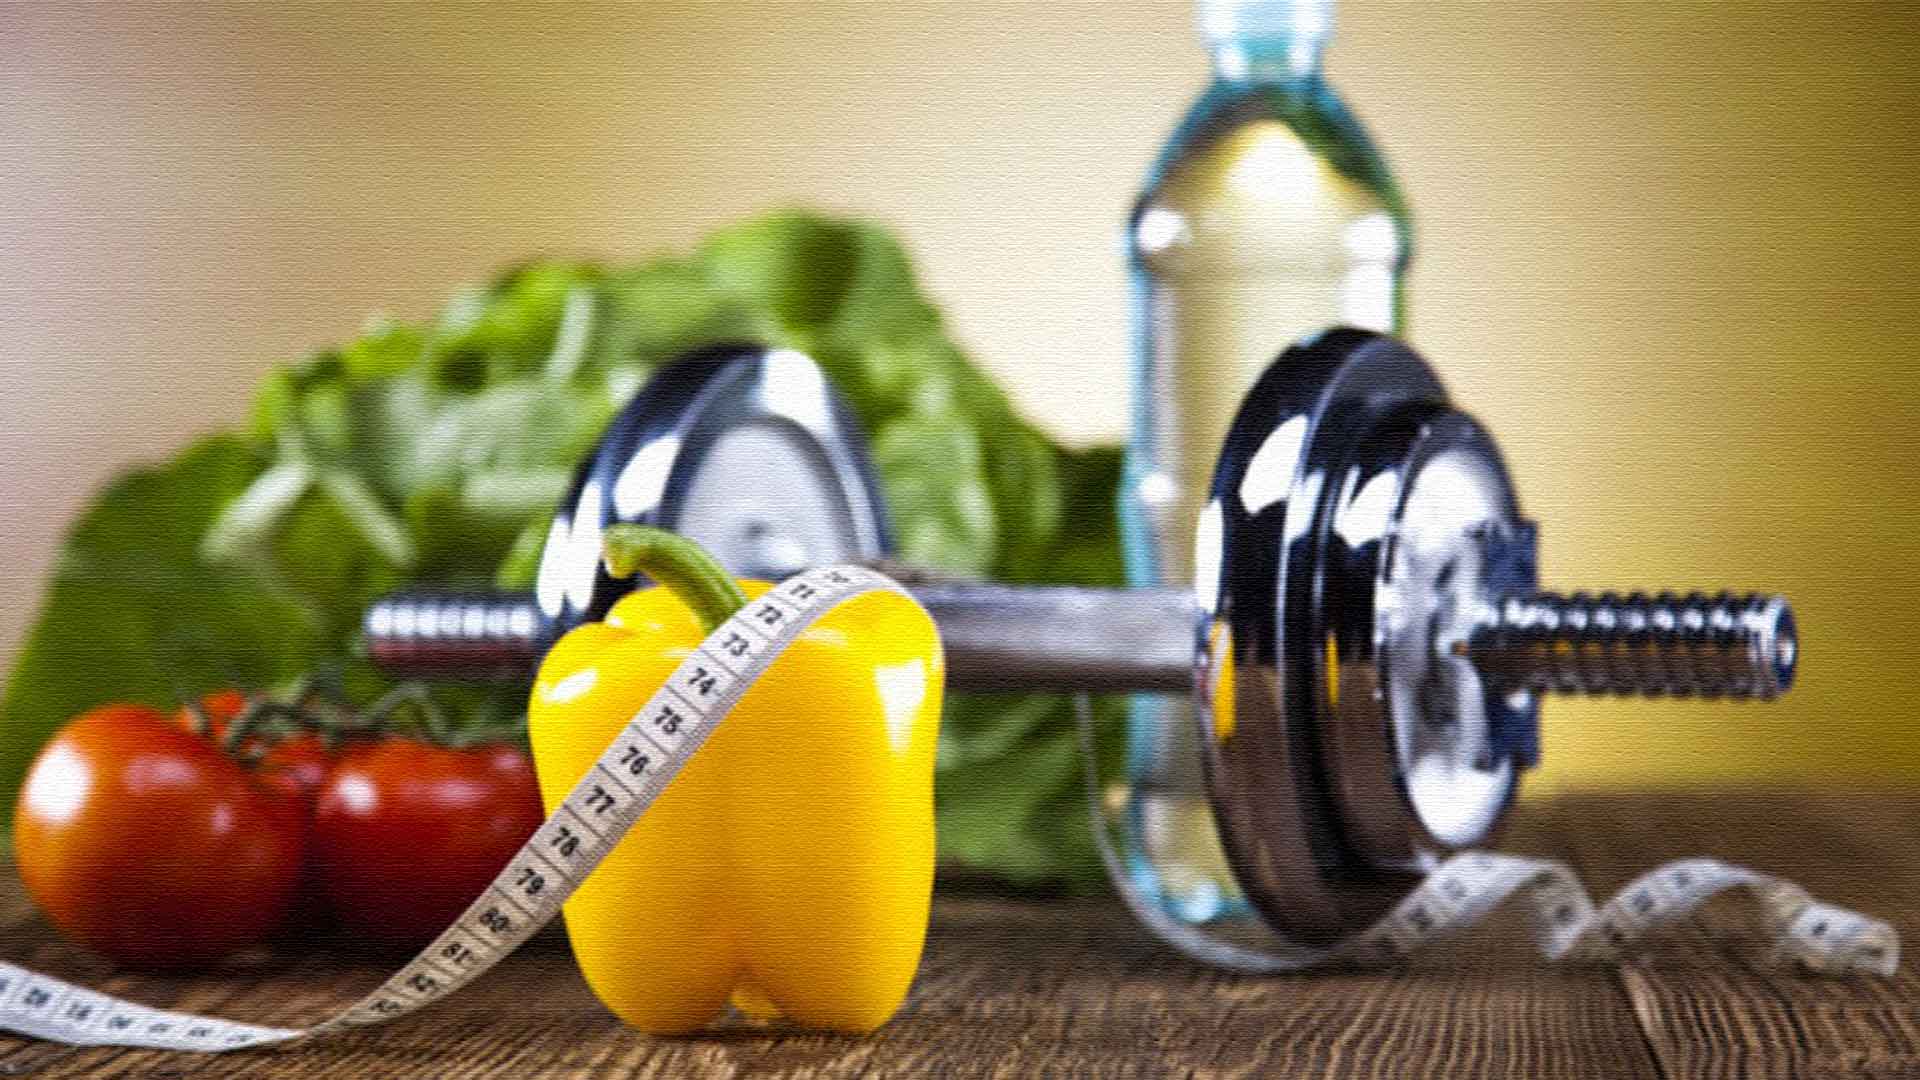 Правильное Питание И Упражнения